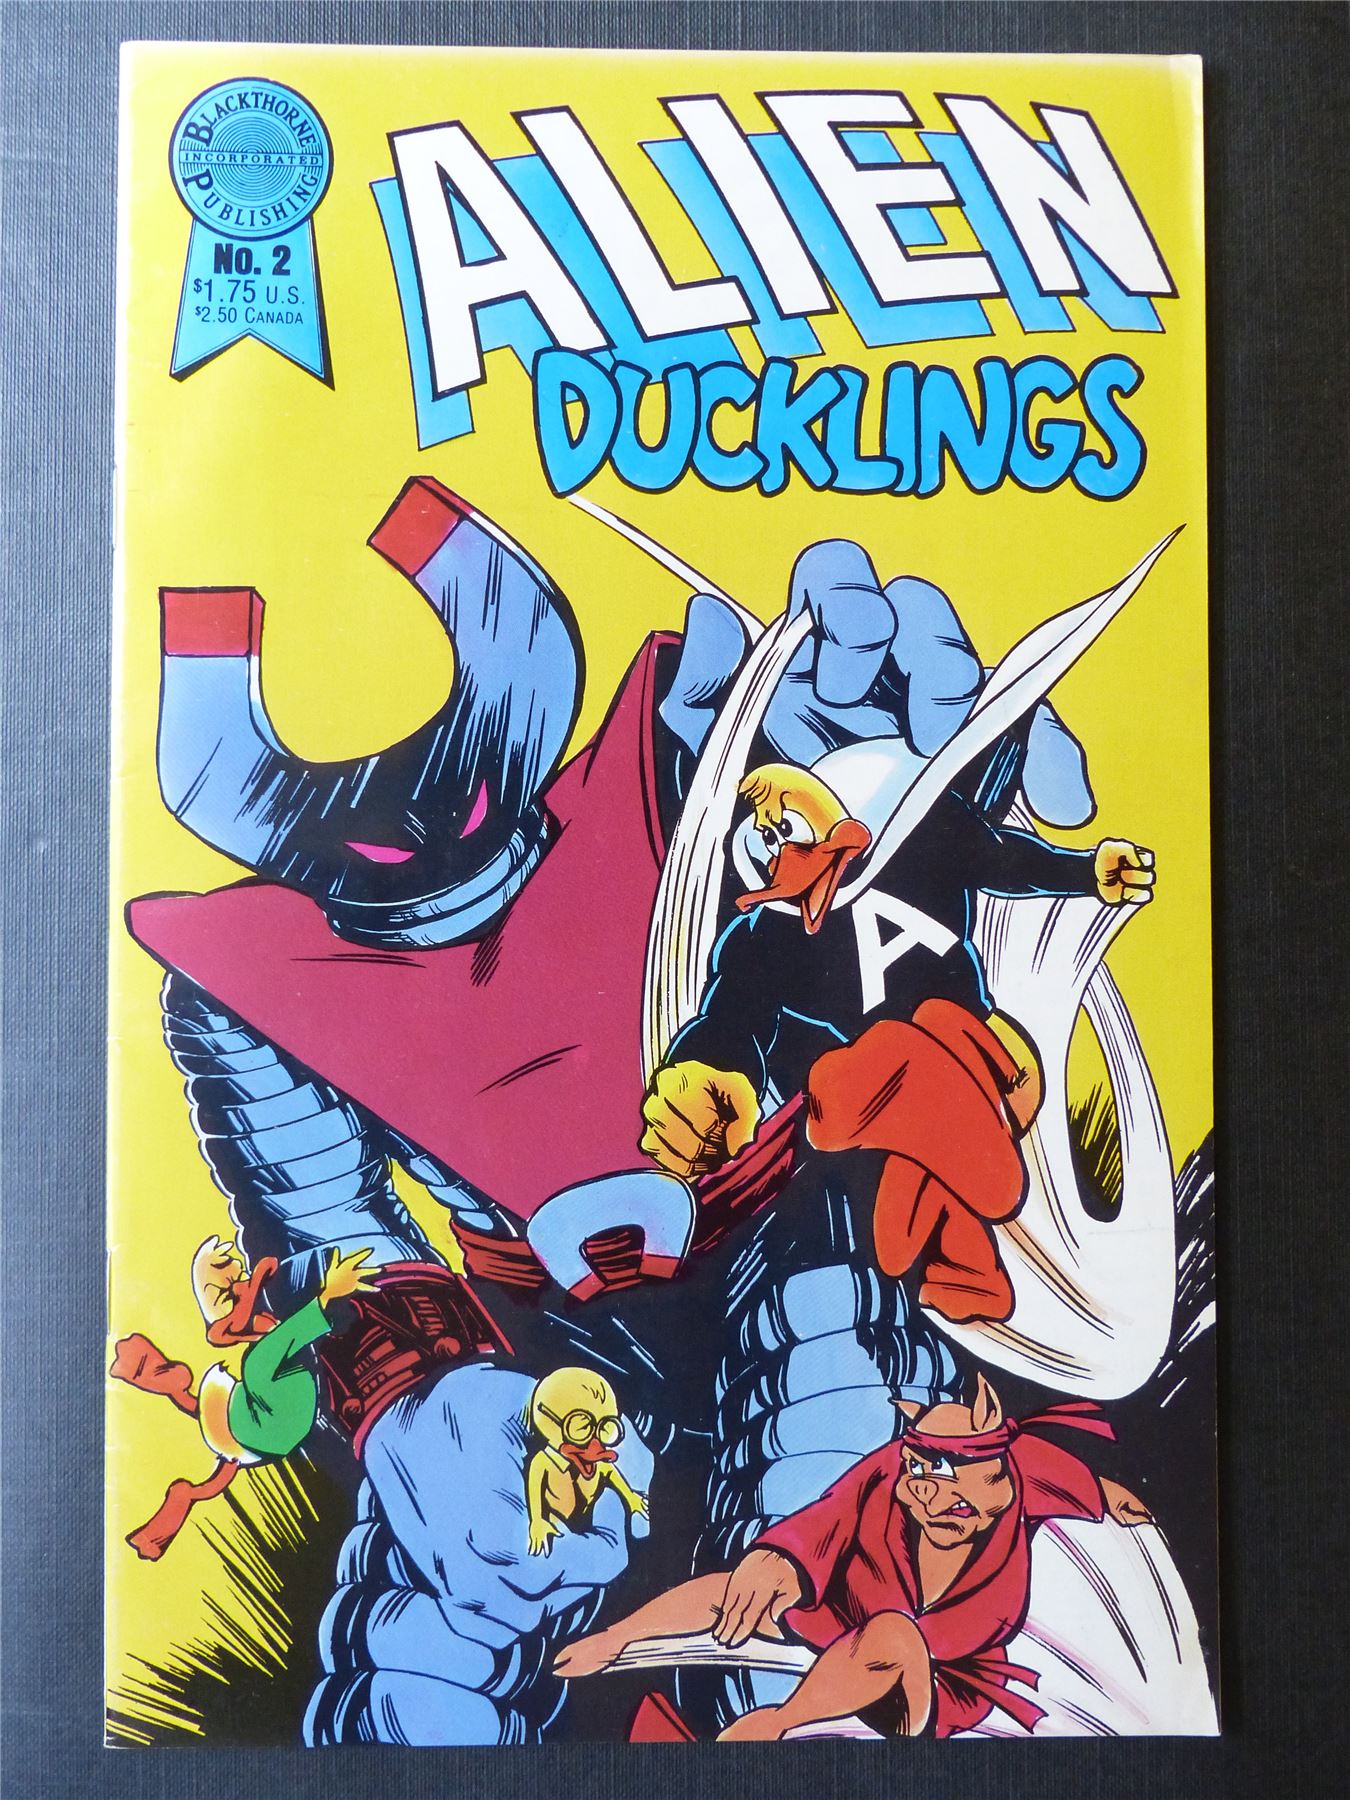 ALIEN Ducklings #2 - Blackthorne Comics #1EO